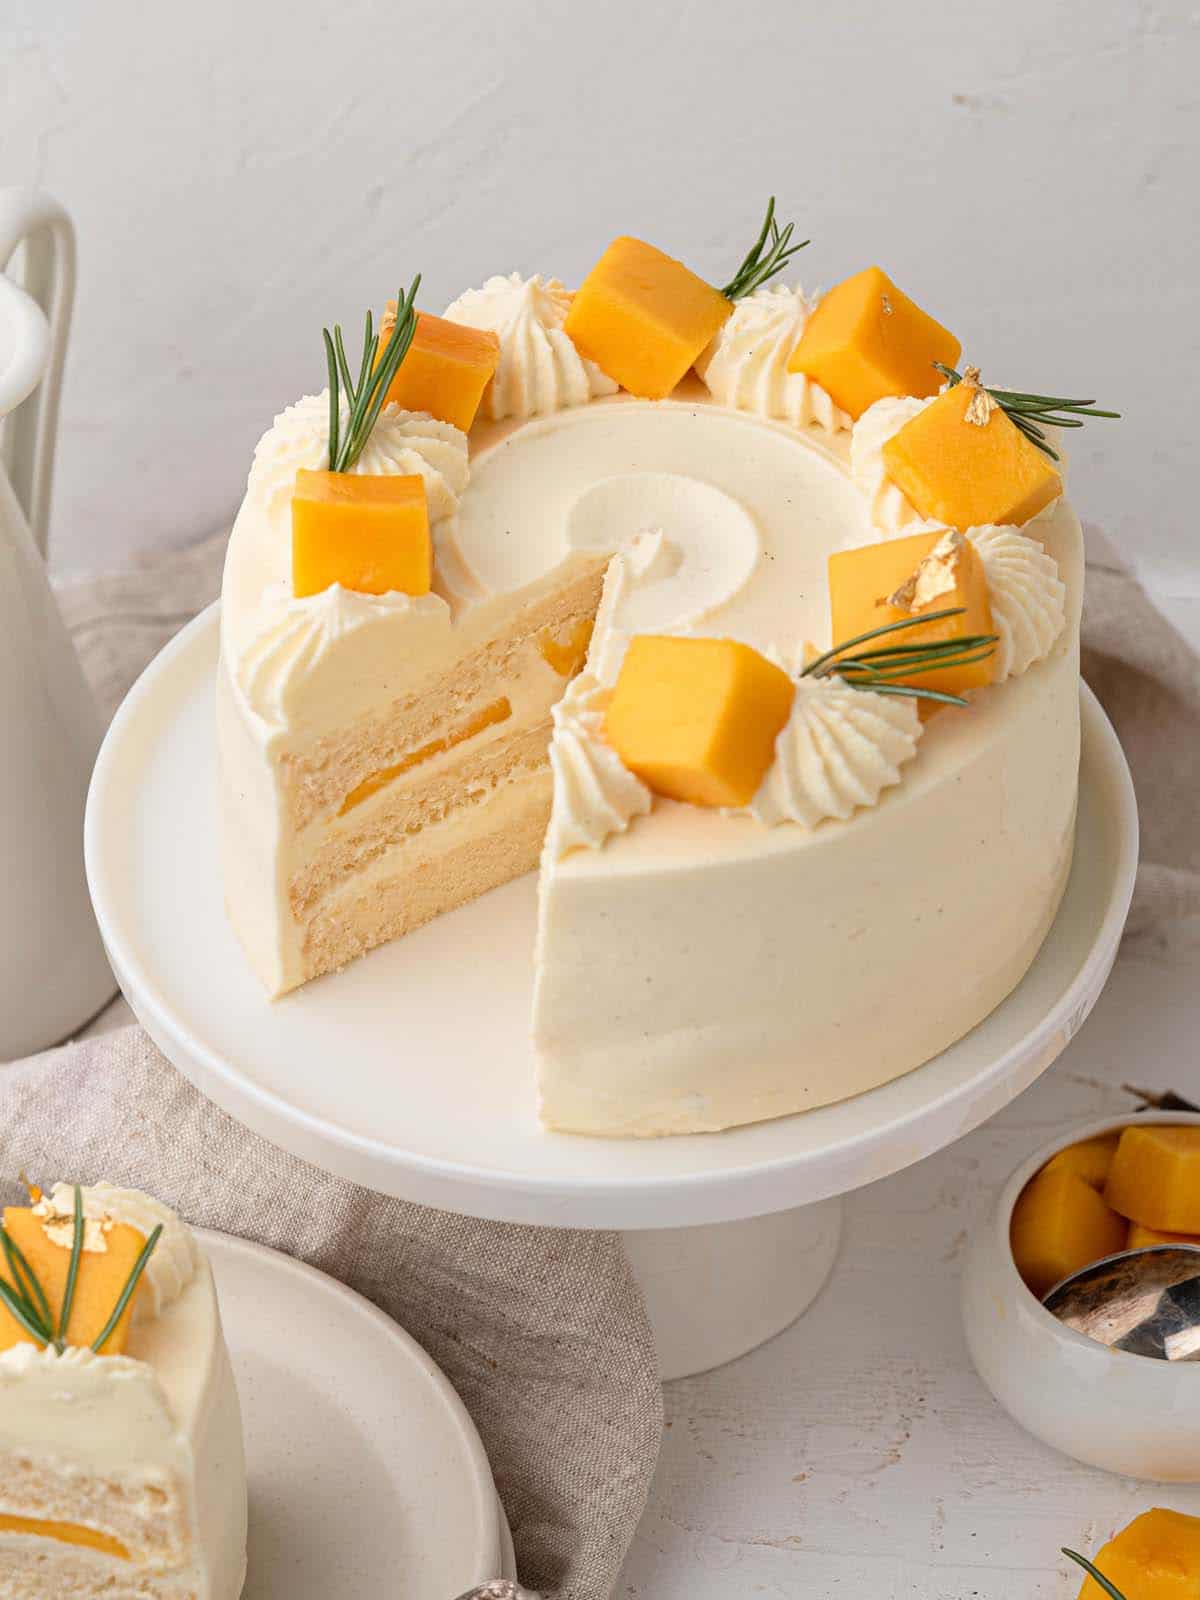 Asian bakery style Fresh mango and vanilla whipped cream cotton soft sponge cake